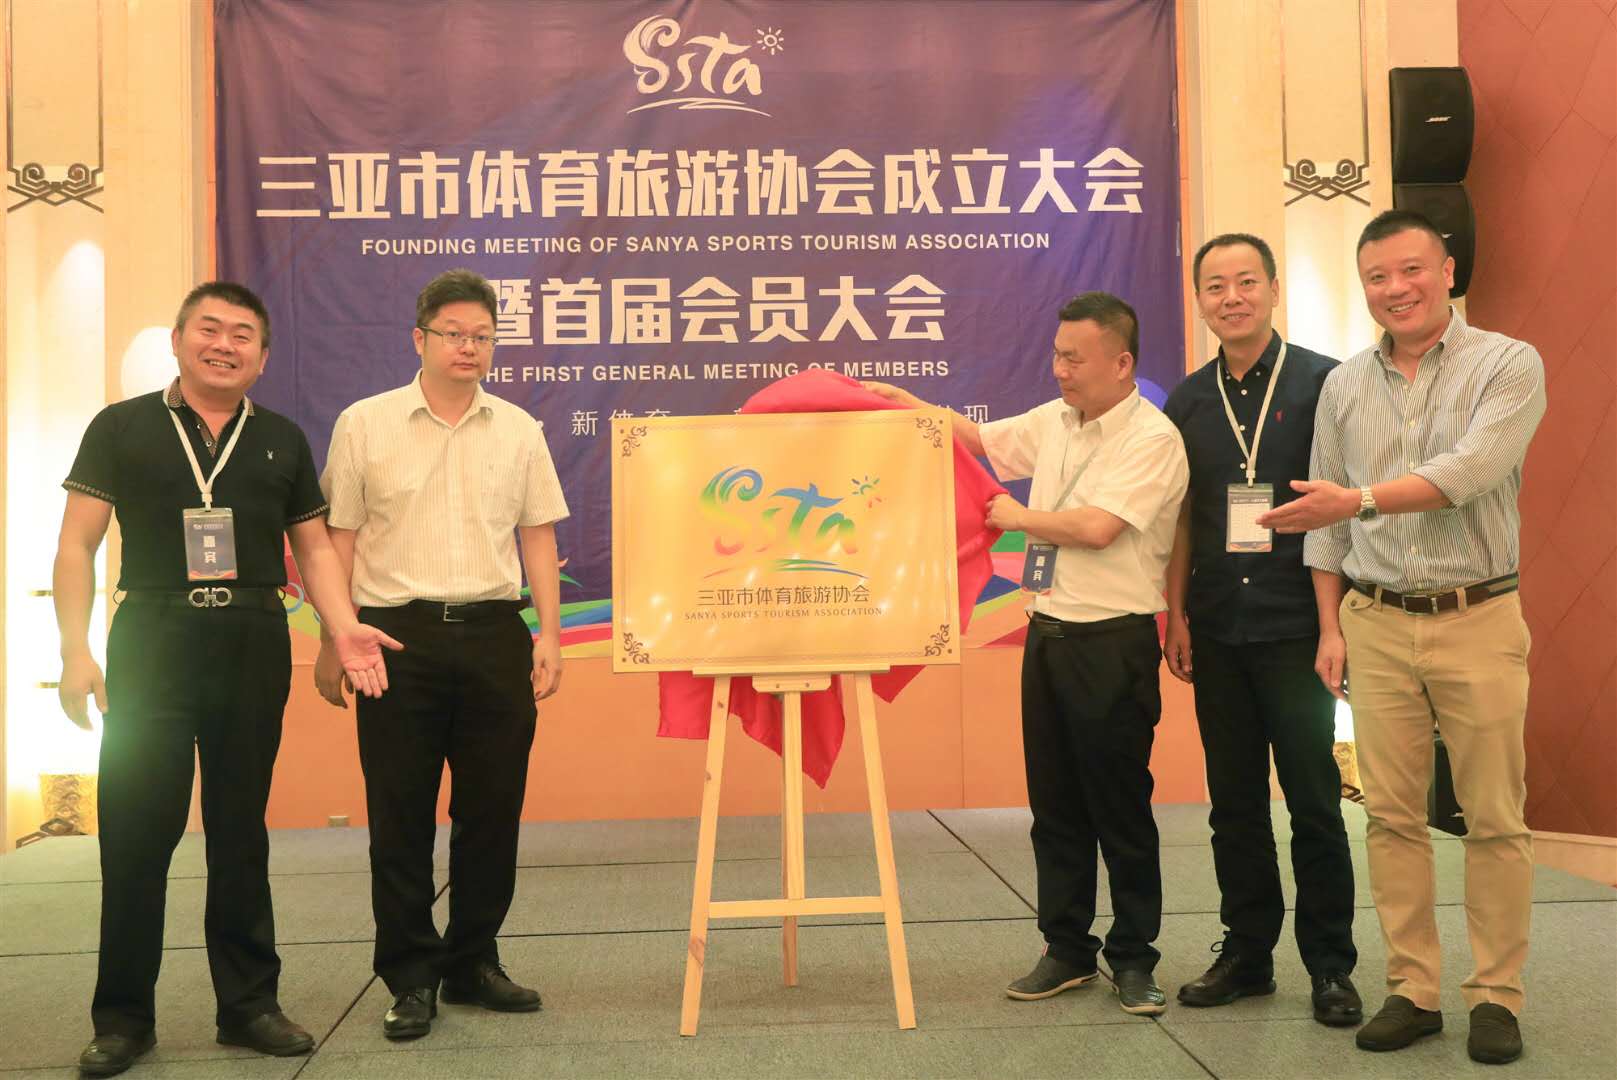 三亞市體育旅游協會成立大會暨首屆會員大會5月22日圓滿舉行